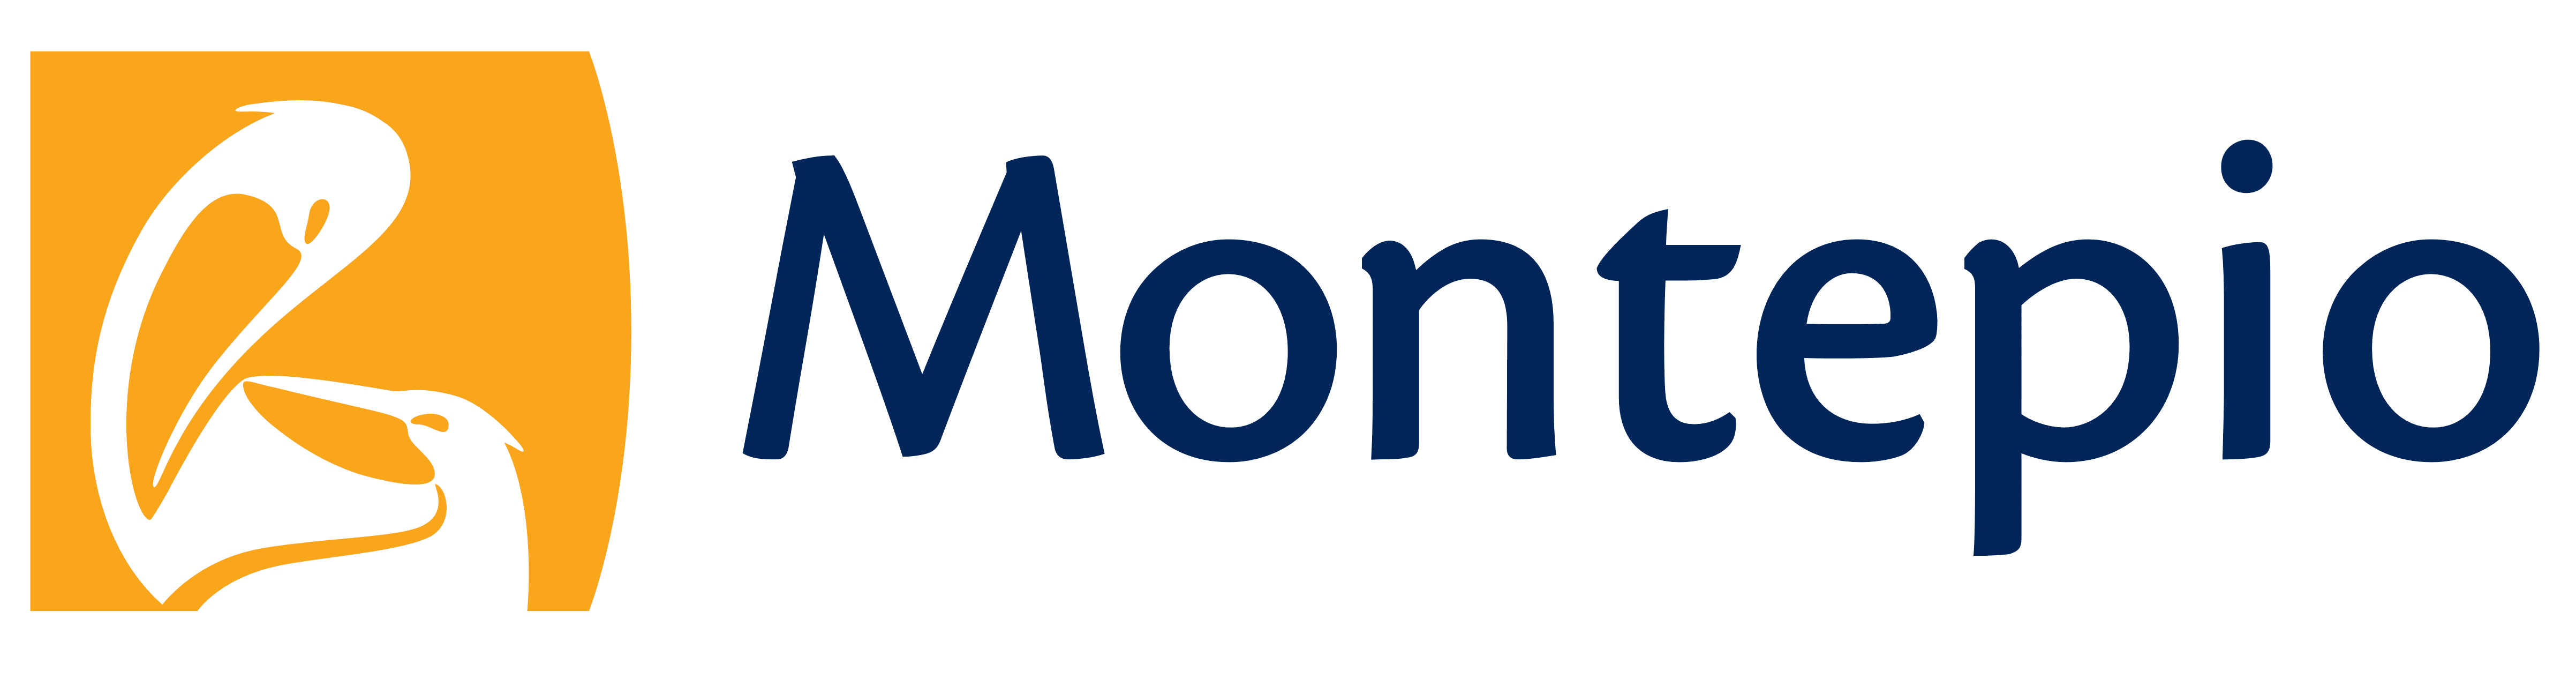 Montepio logo, logotype